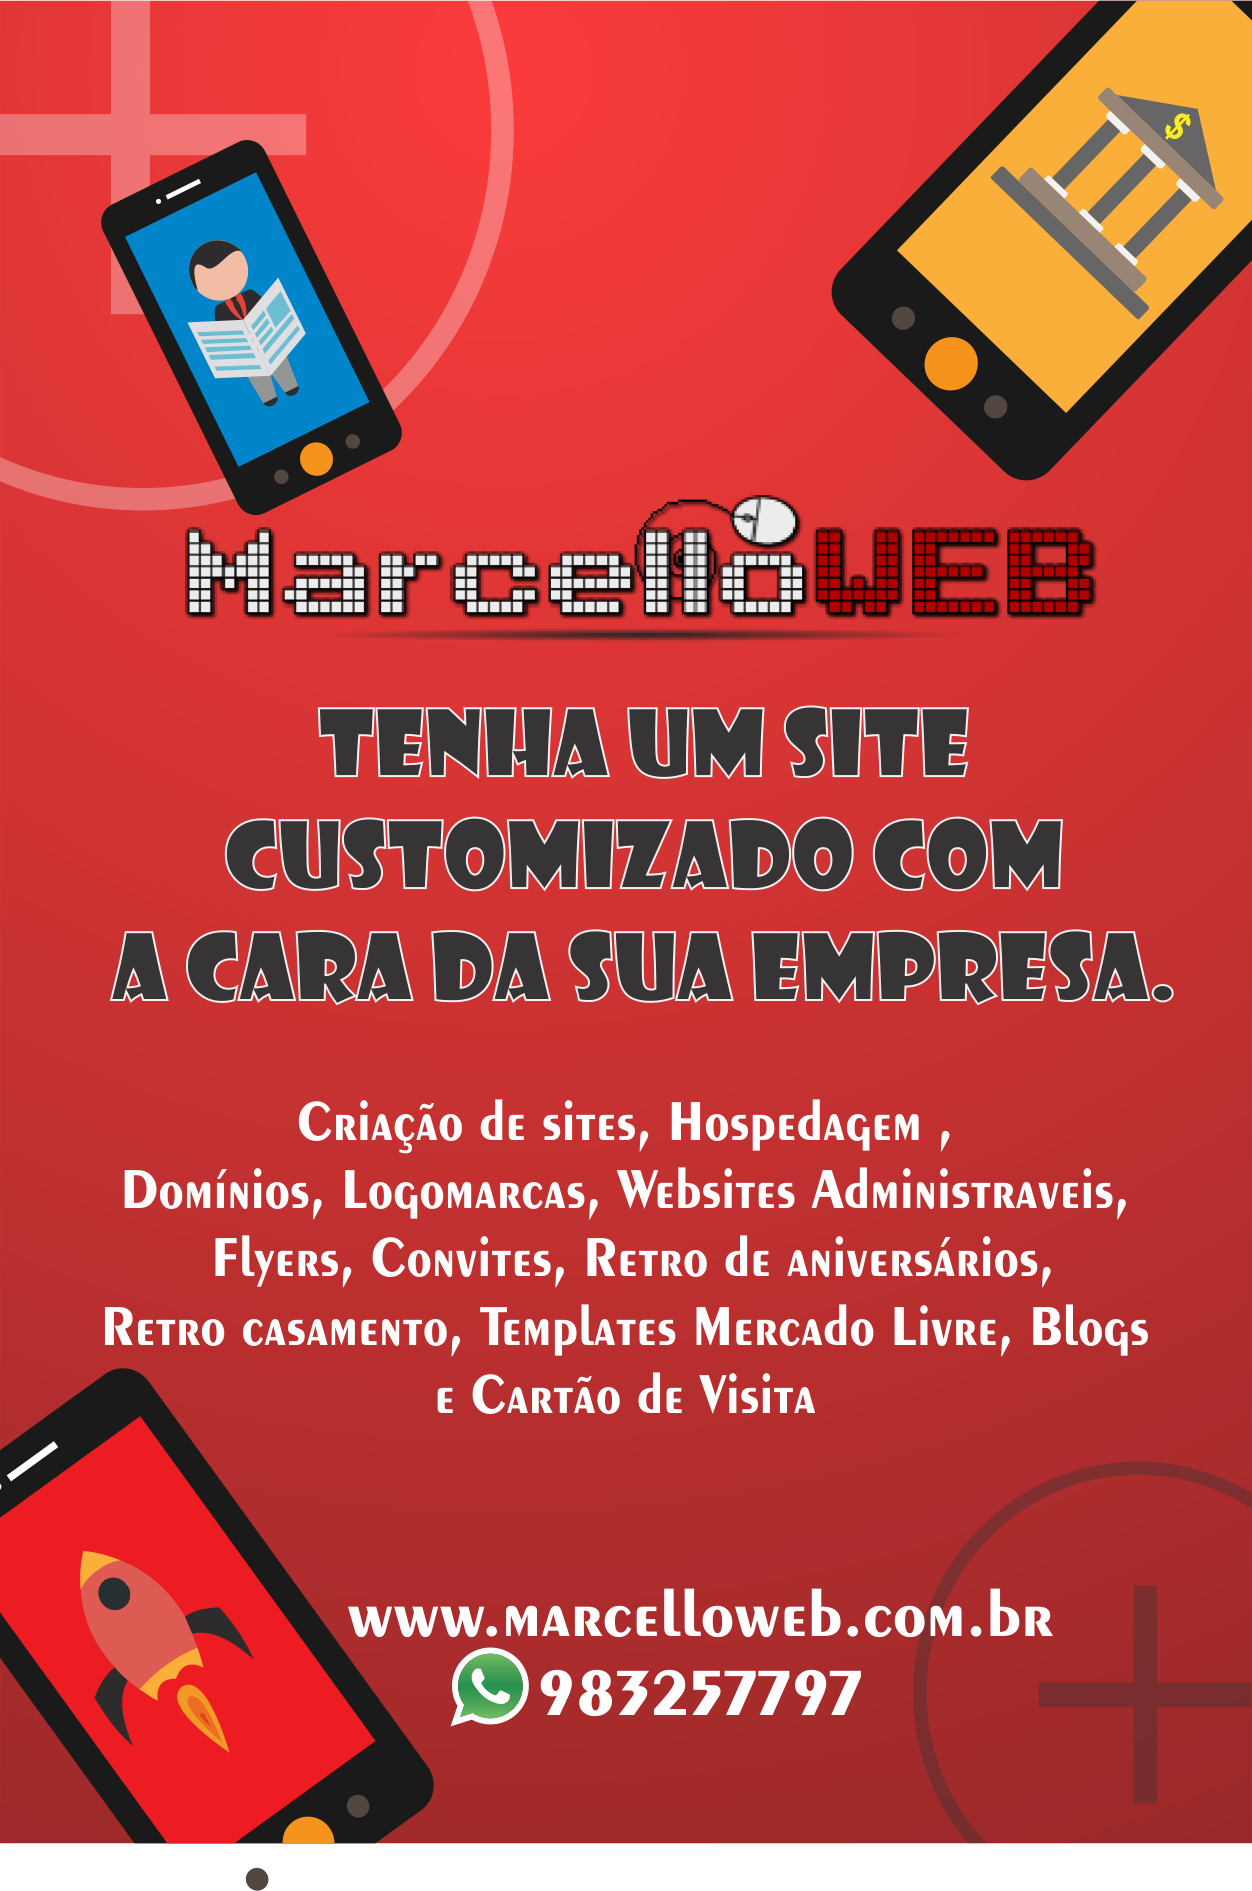 marcelloweb